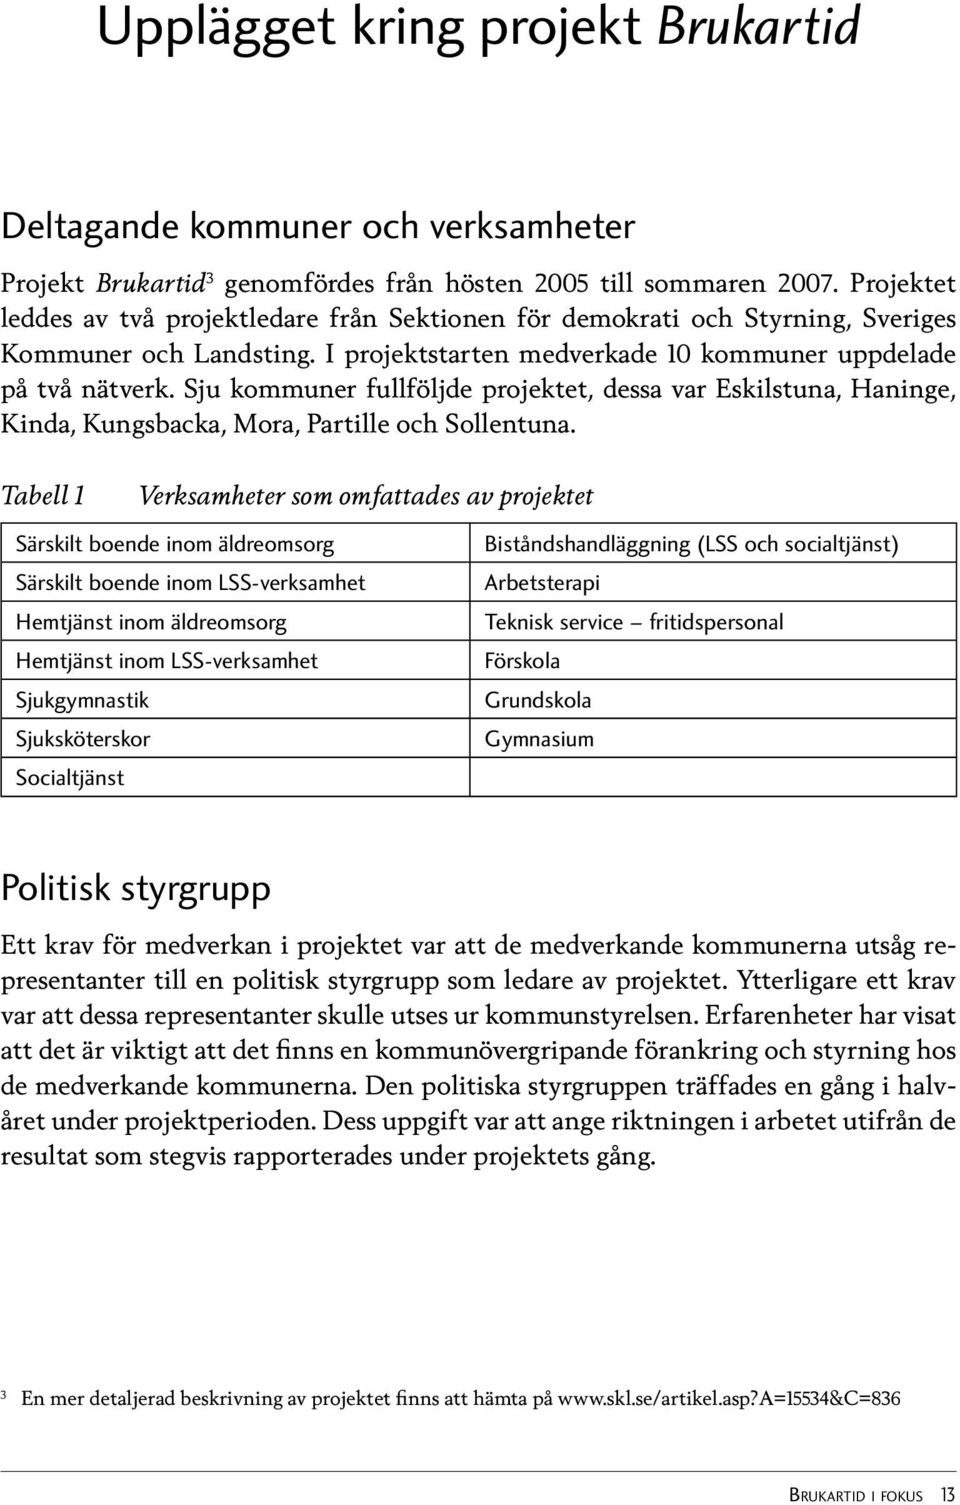 Sju kommuner fullföljde projektet, dessa var Eskilstuna, Haninge, Kinda, Kungsbacka, Mora, Partille och Sollentuna.